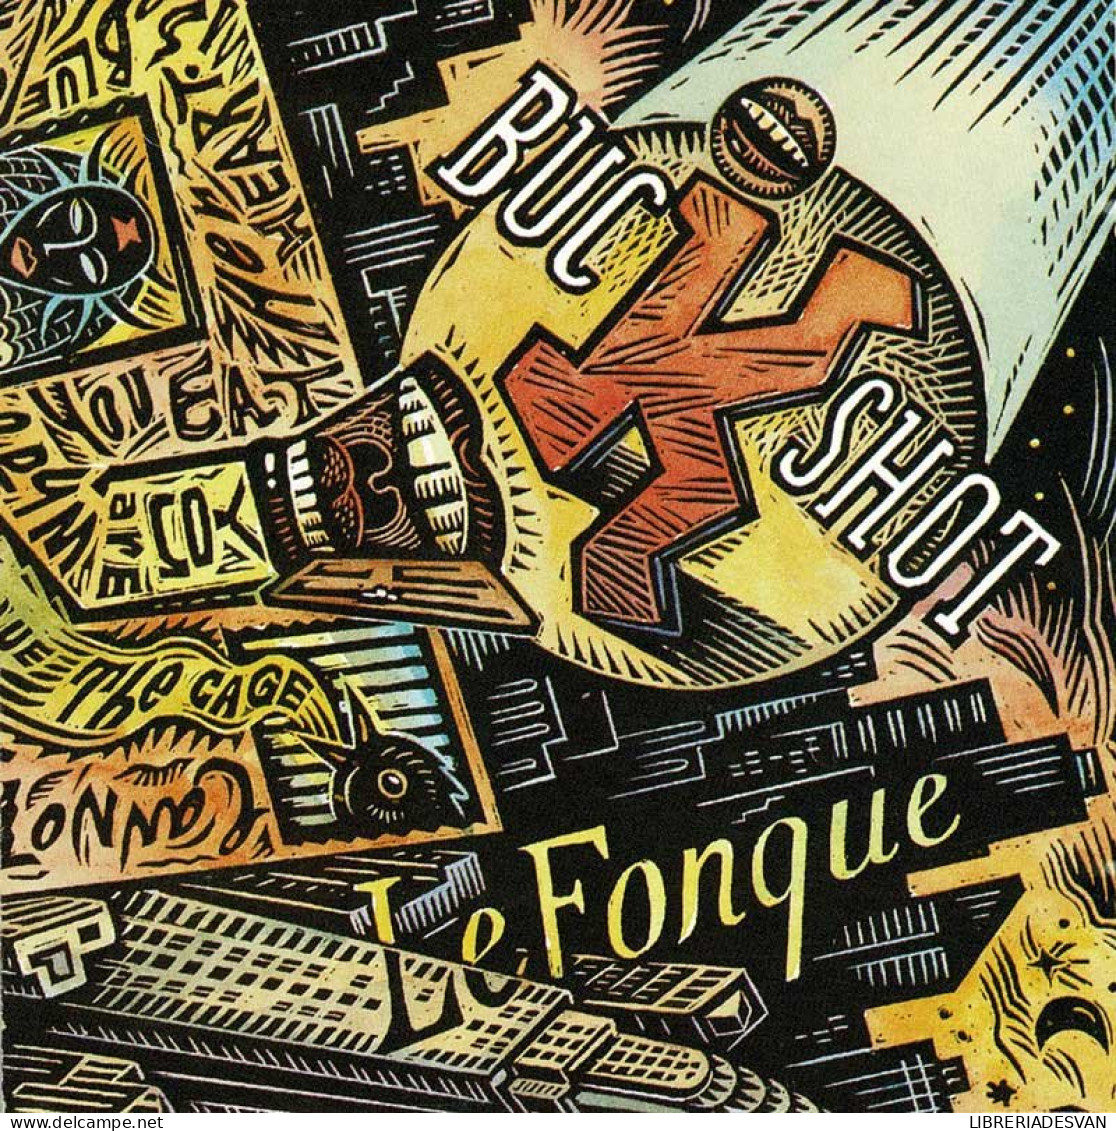 Buckshot LeFonque - Buckshot LeFonque. CD - Rap En Hip Hop